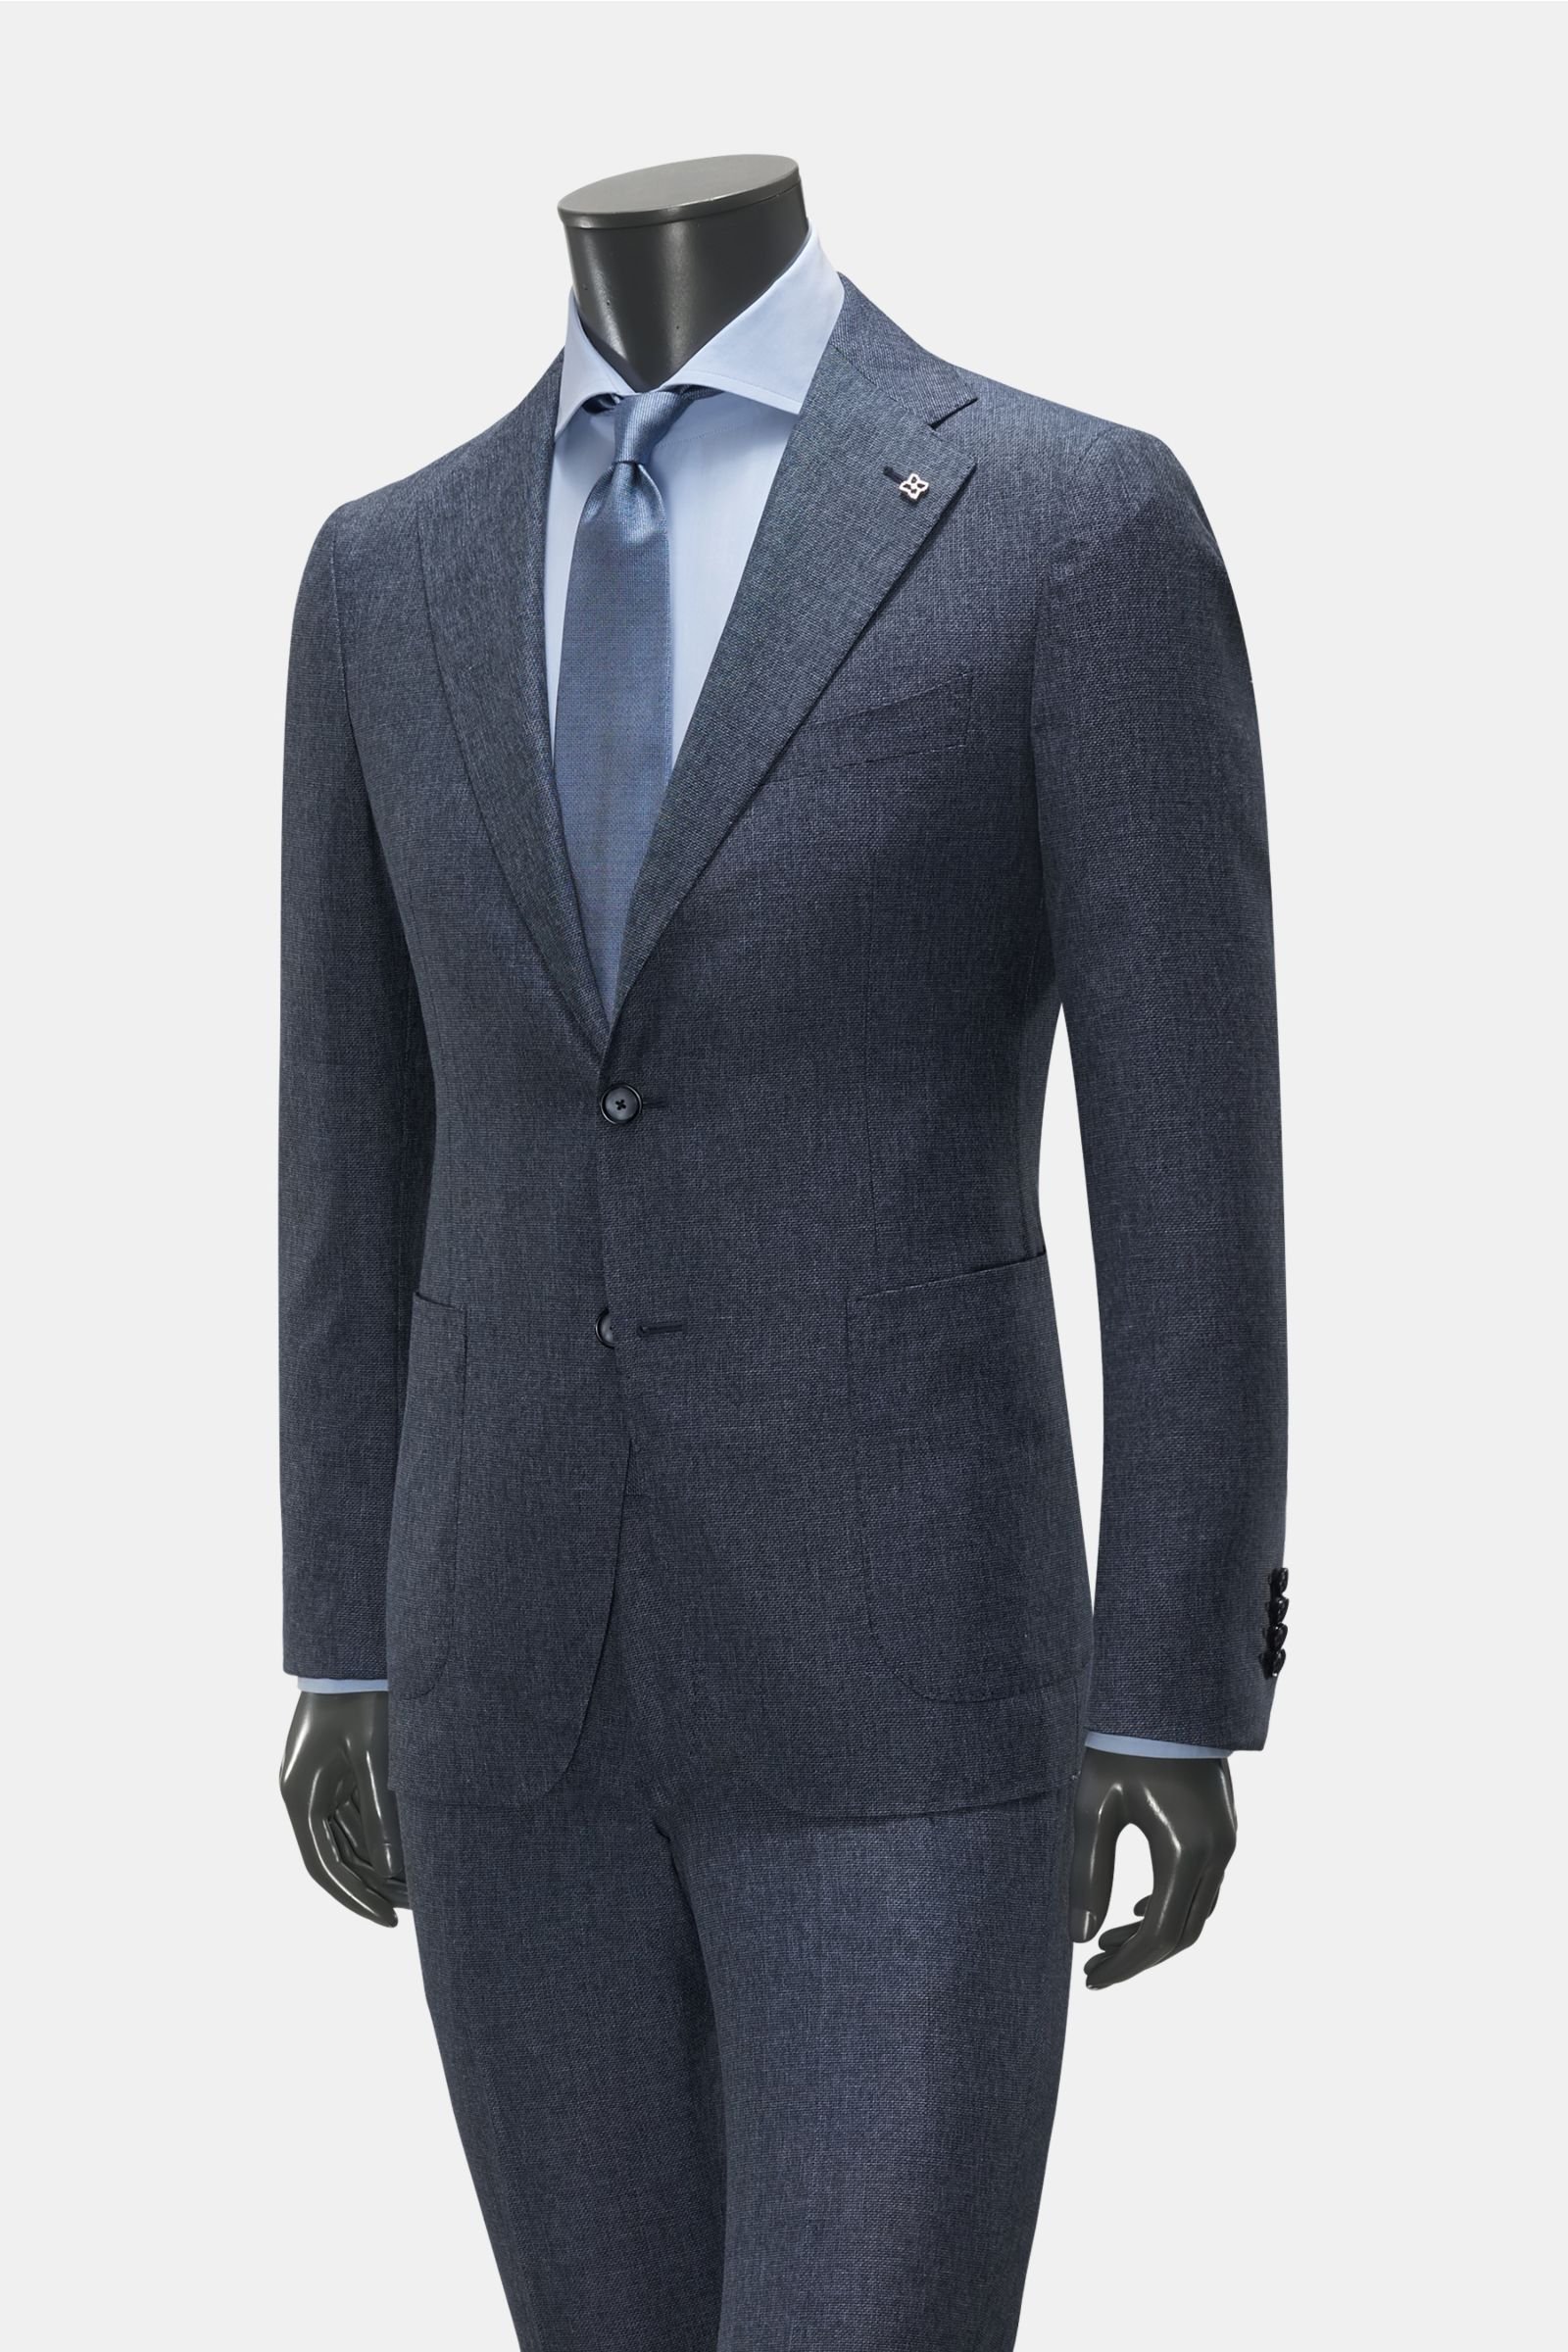 Suit grey-blue